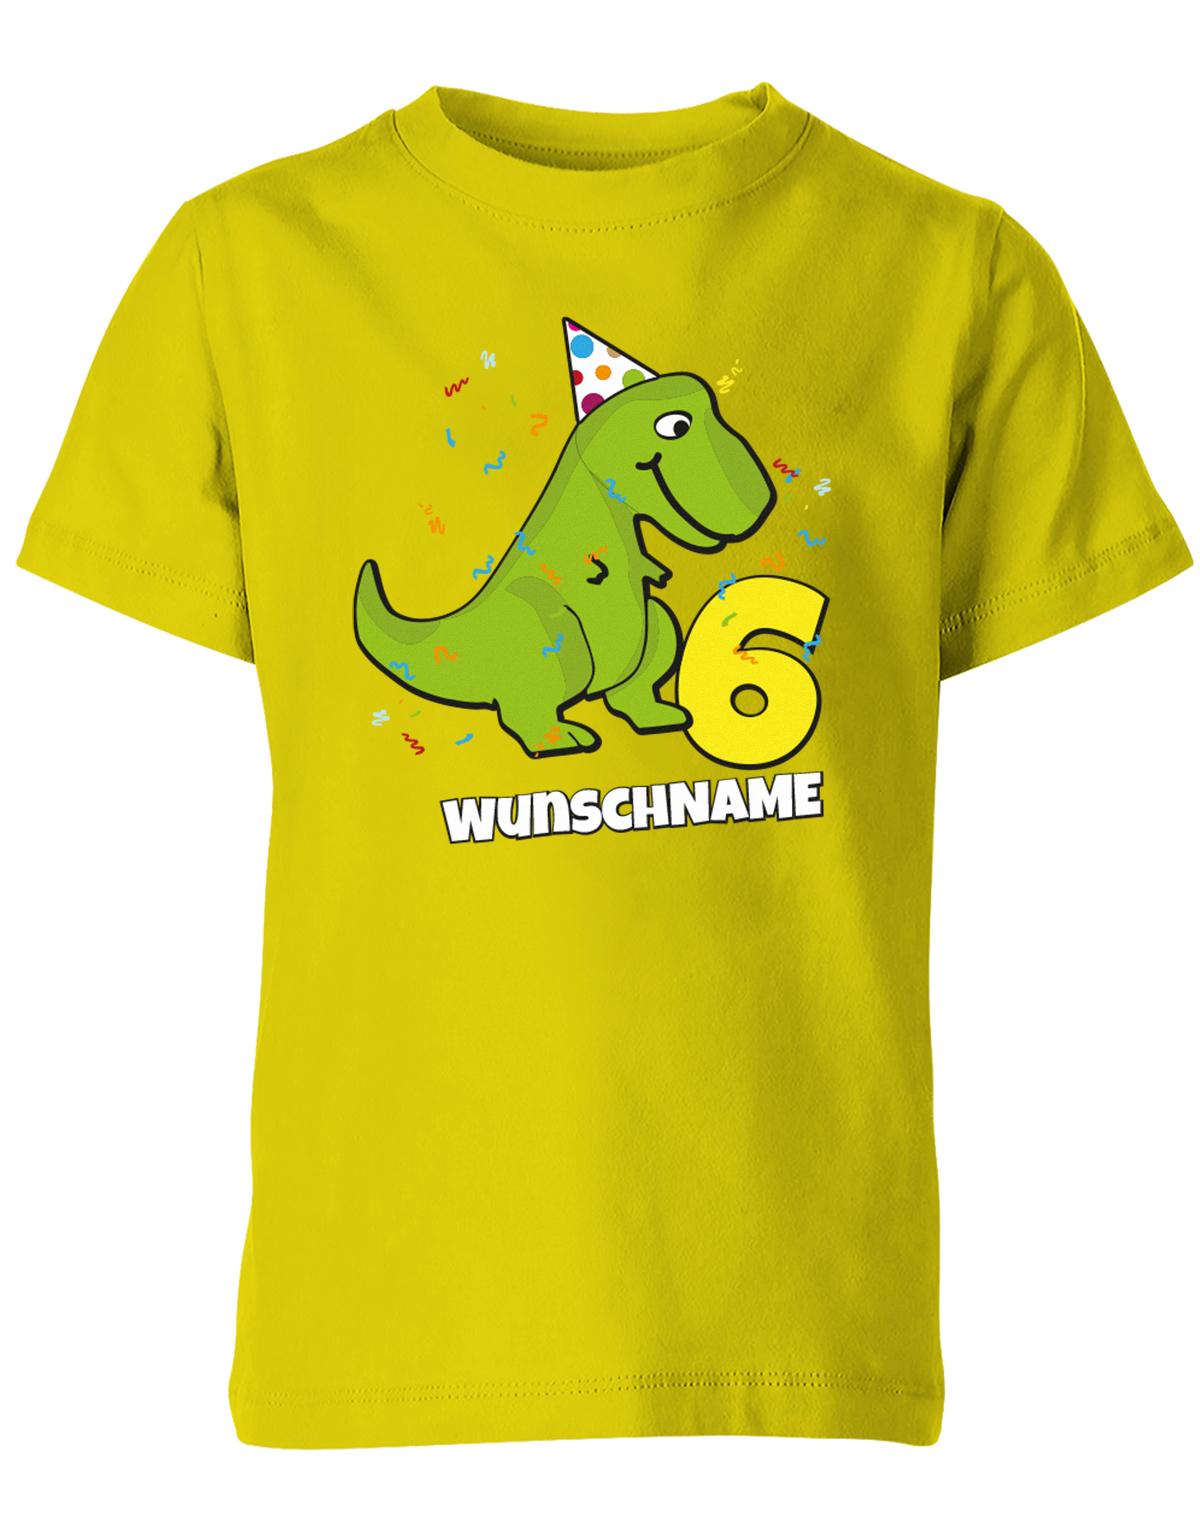 ich-bin-6-Dinosaurier-t-rex-wunschname-geburtstag-kinder-shirt-gelb